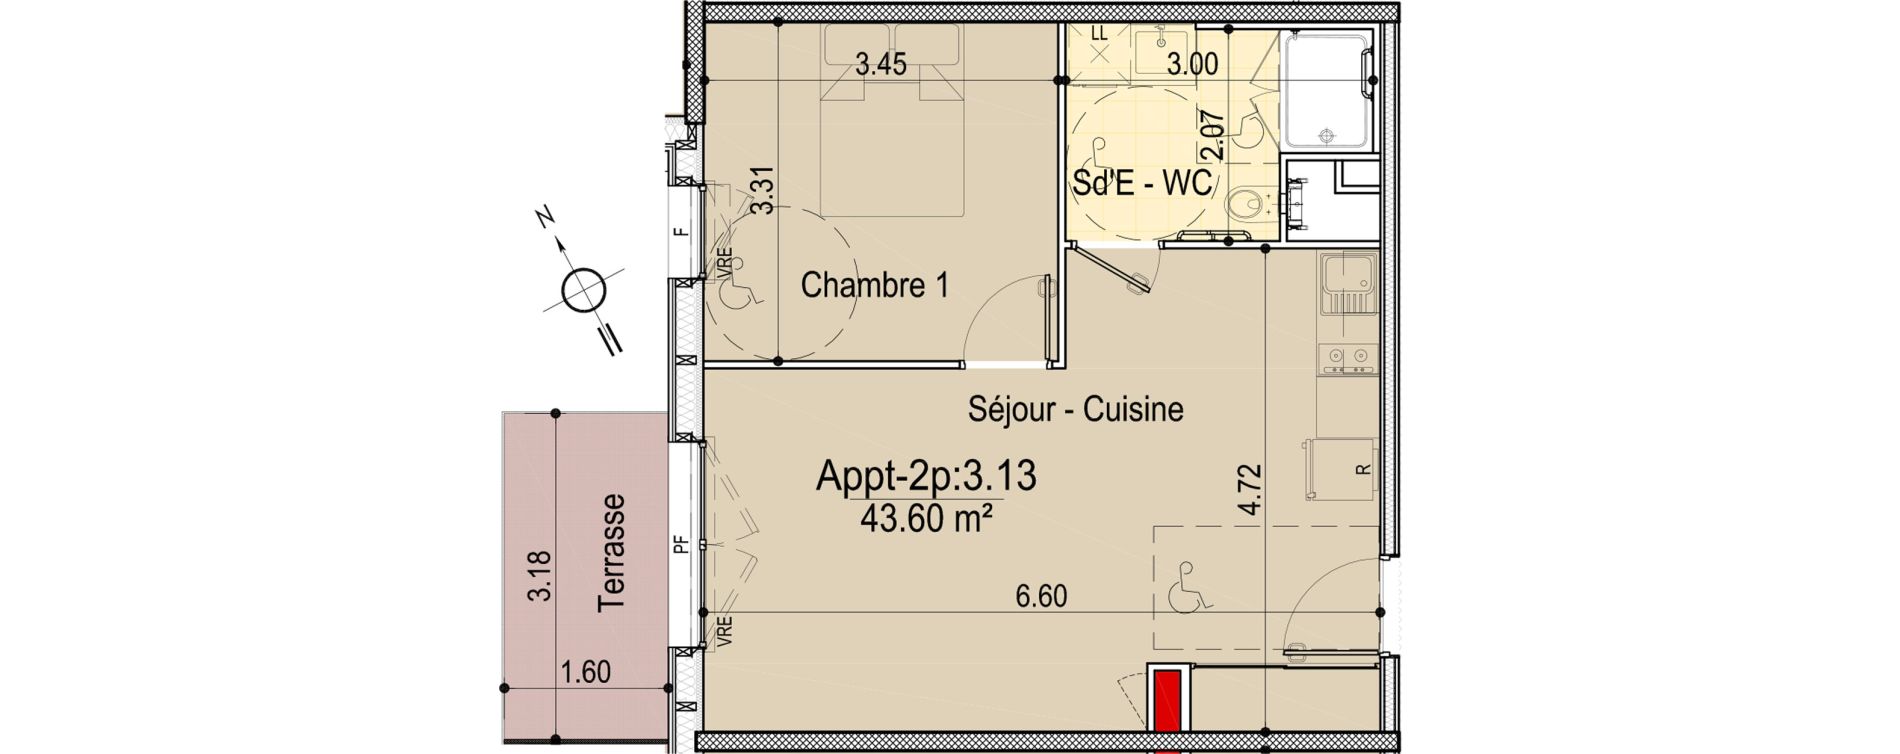 Appartement T2 de 43,60 m2 aux Sables-D'Olonne Le chateau d olonne